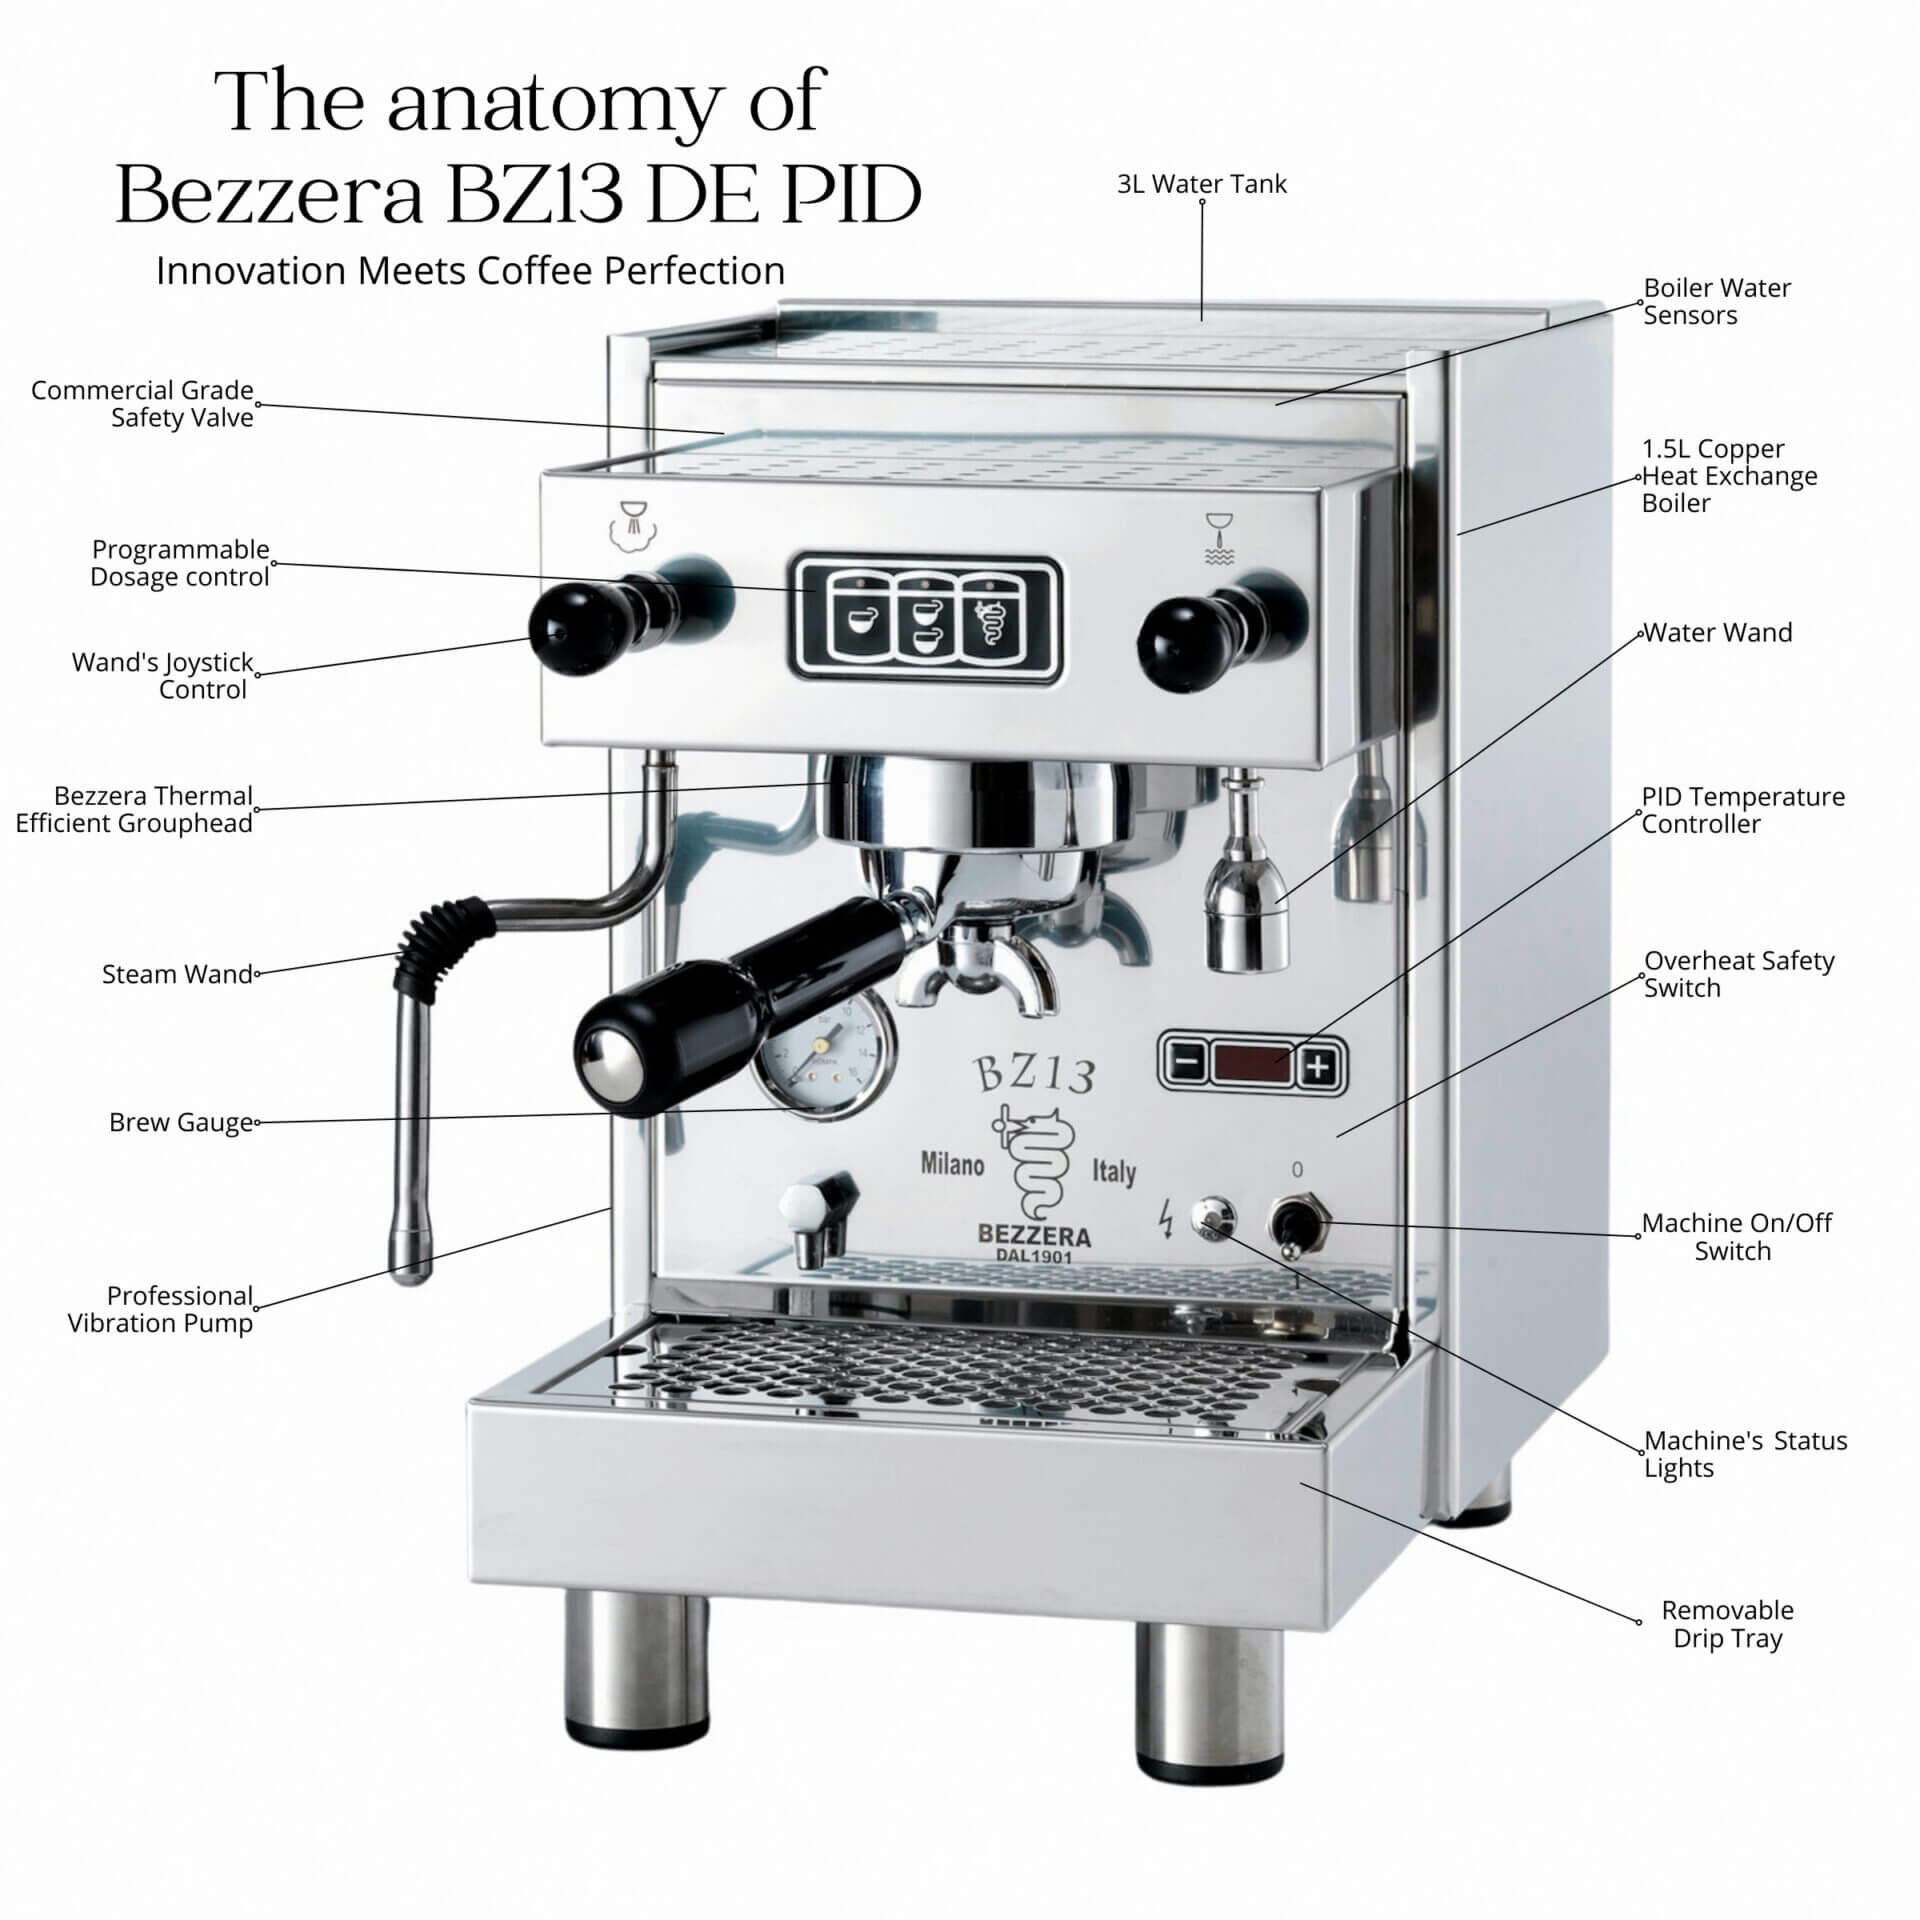 Bezzera BZ13 DE PID Anatomy Coffee Machine